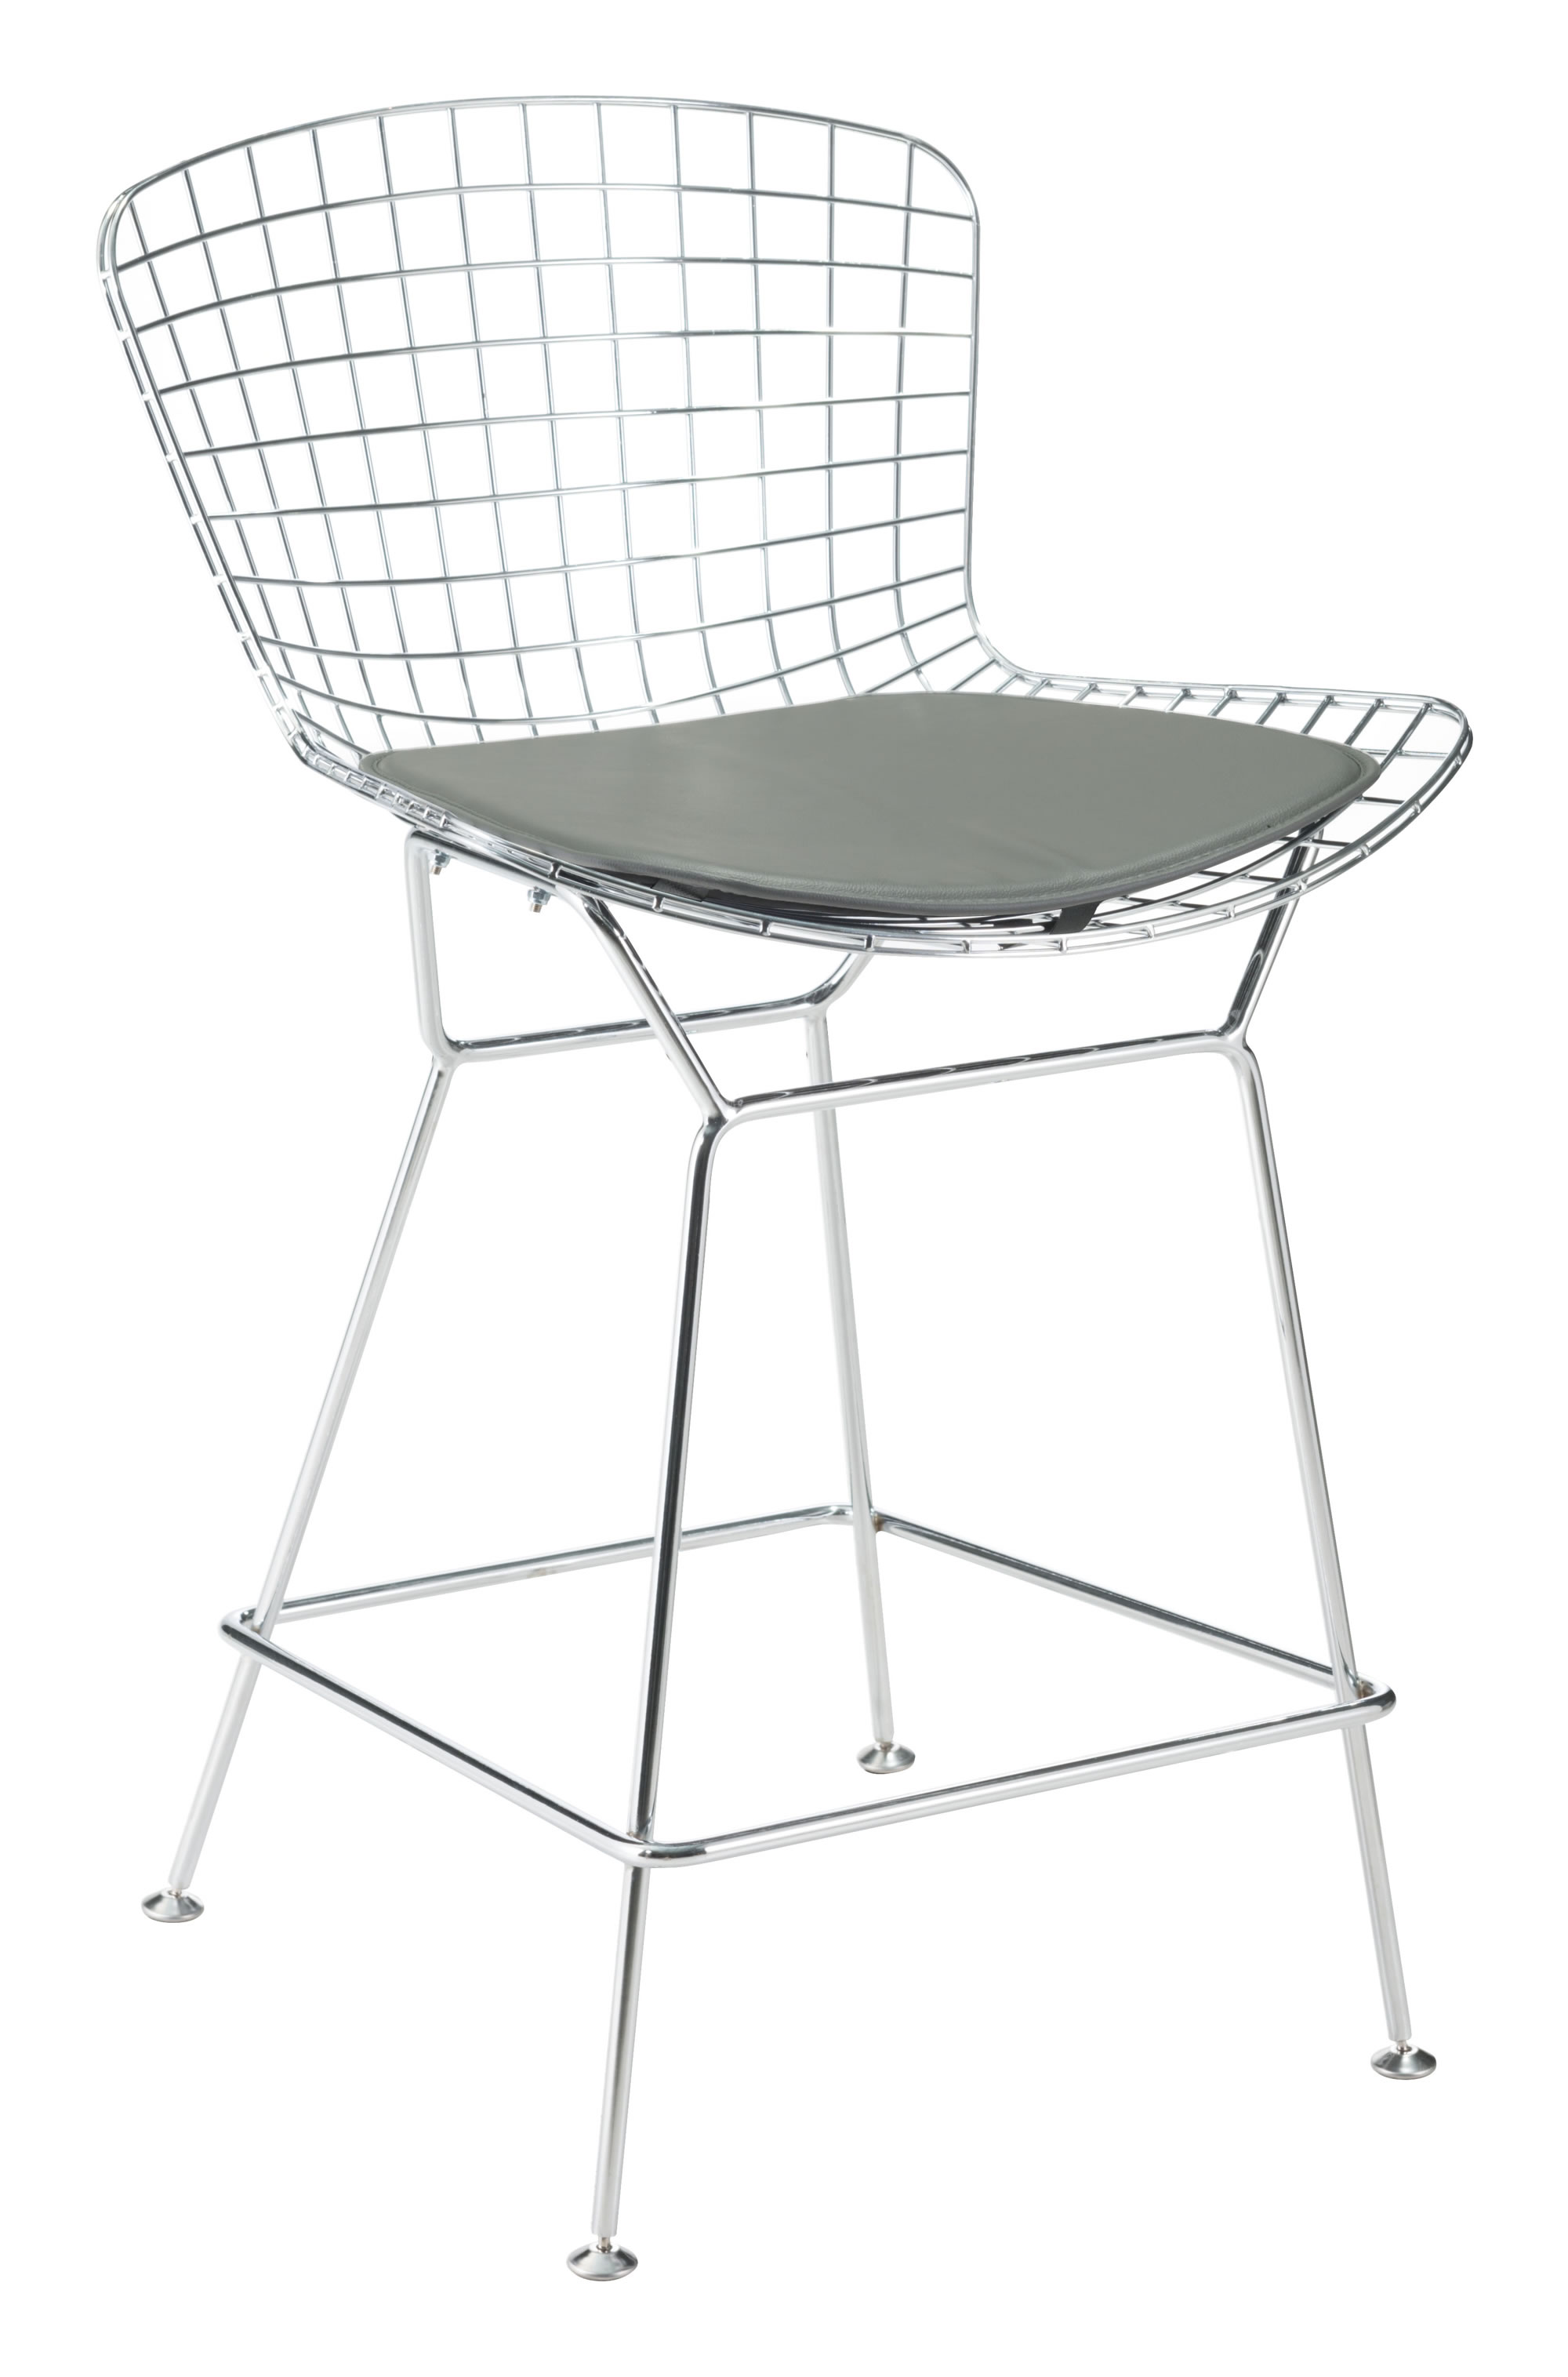 17" x 17" x 0.5" Gray, Leatherette, Chair Cushion